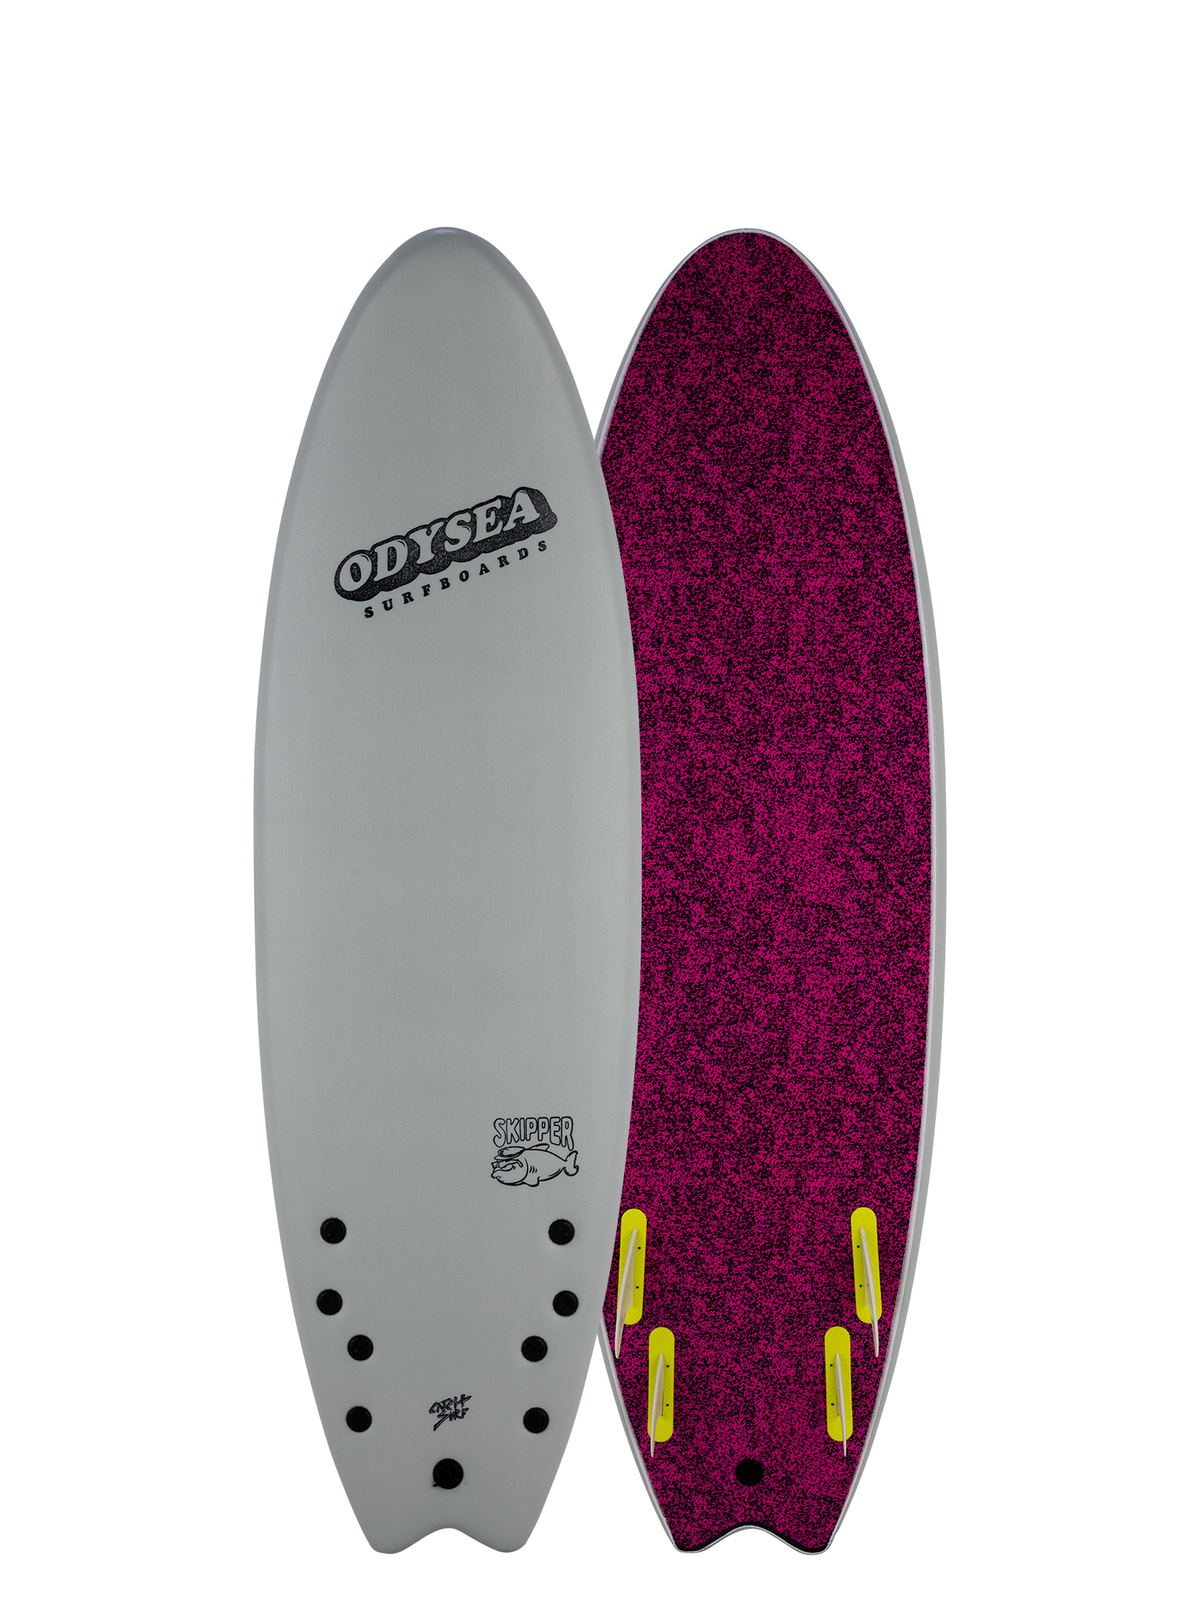 Catch Surf Odysea Skipper 6' Quad Fin. Designed for beginners 